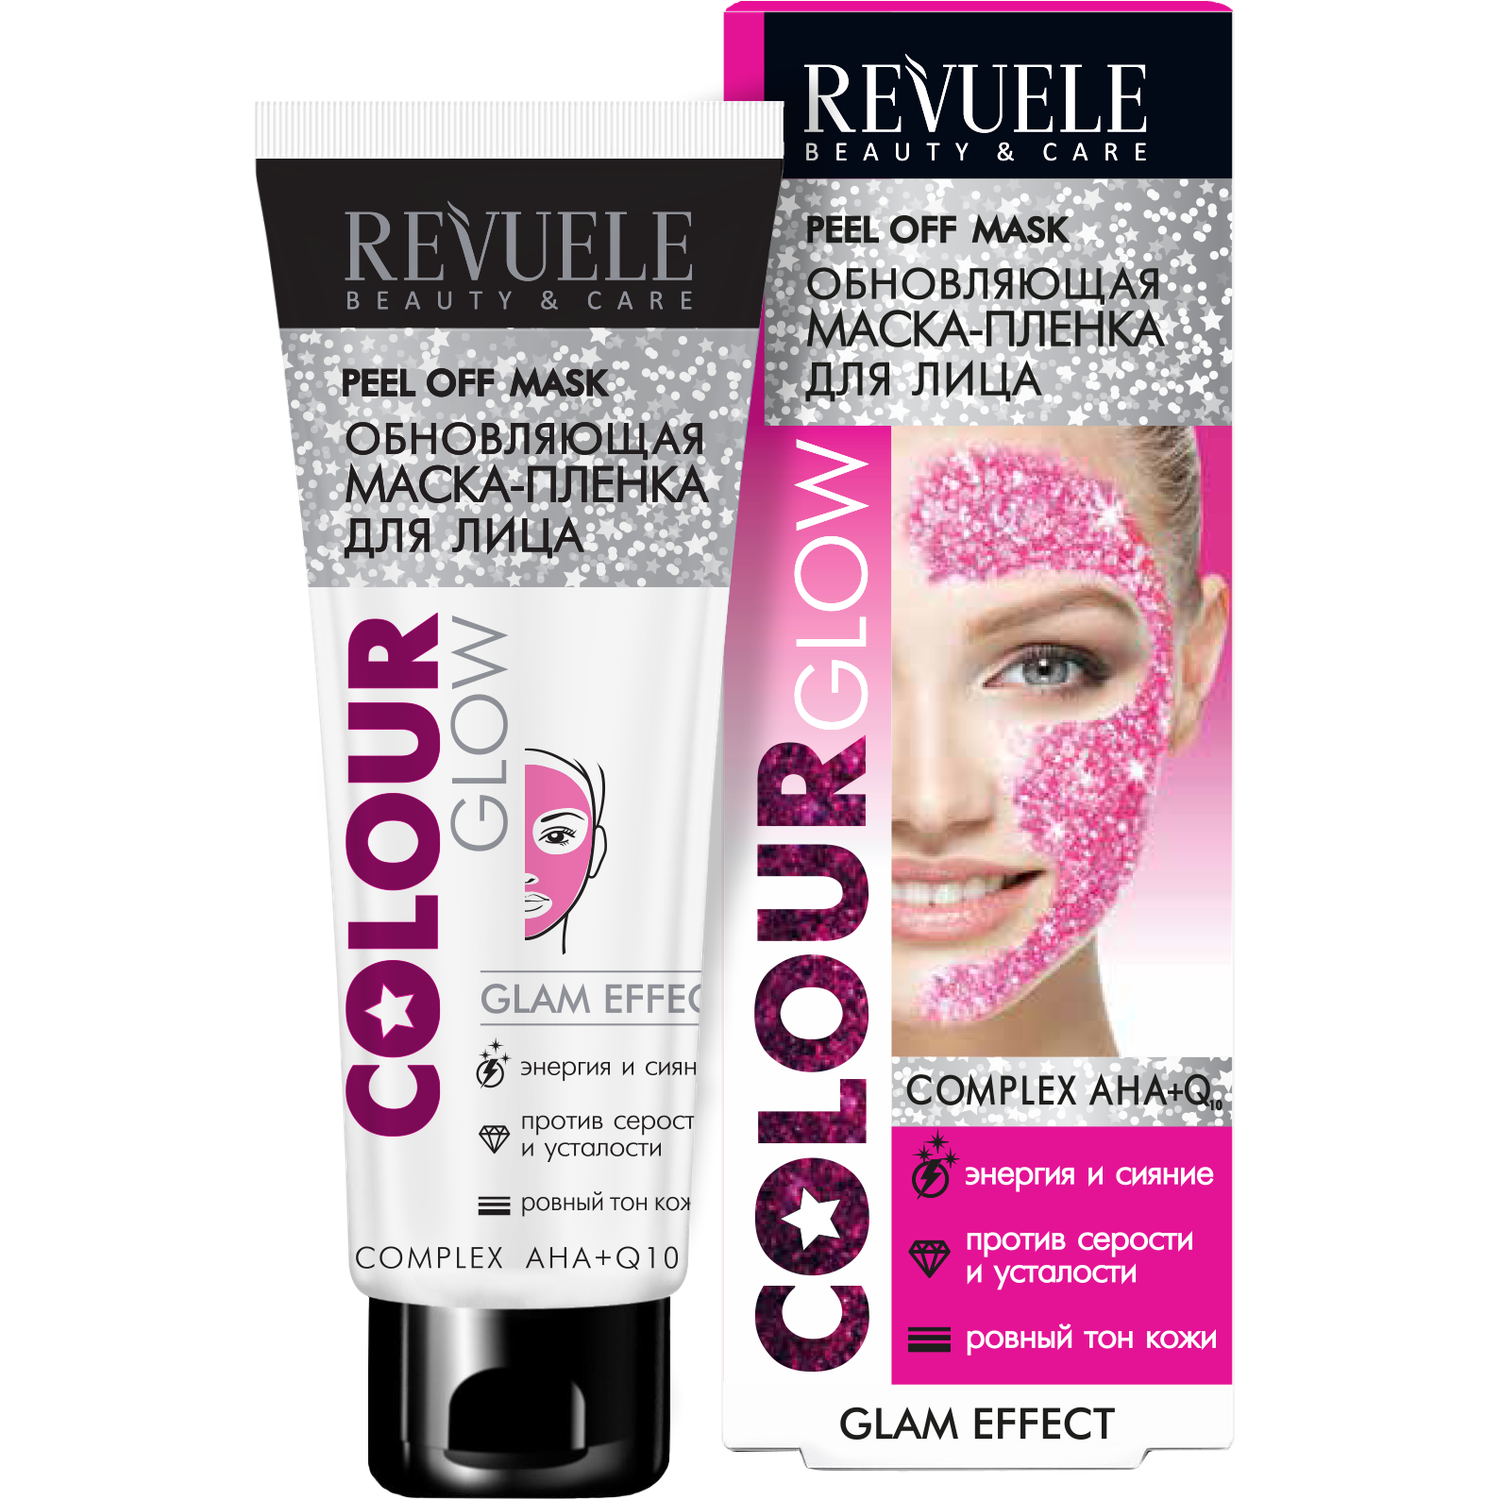 Маска-плёнка Compliment Revuele для лица обновляющая Colour Glow 80мл - фото 1